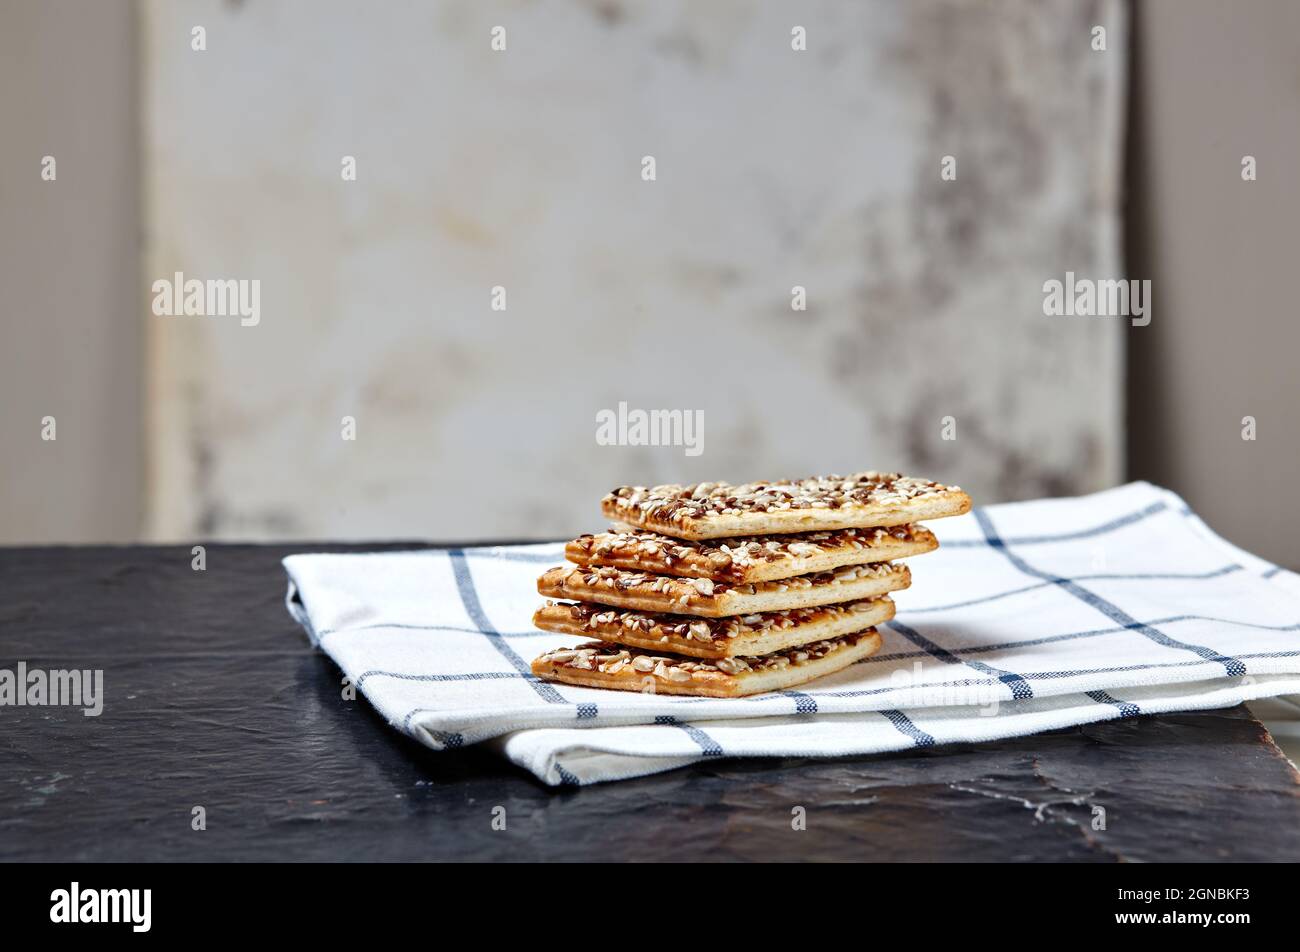 Pan crujiente con semillas. Crujiente de pan sobre un fondo de madera. Refrigerio saludable: Cereal crujiente de grano múltiple semilla de lino de cereales, proteína de semillas de girasol Foto de stock